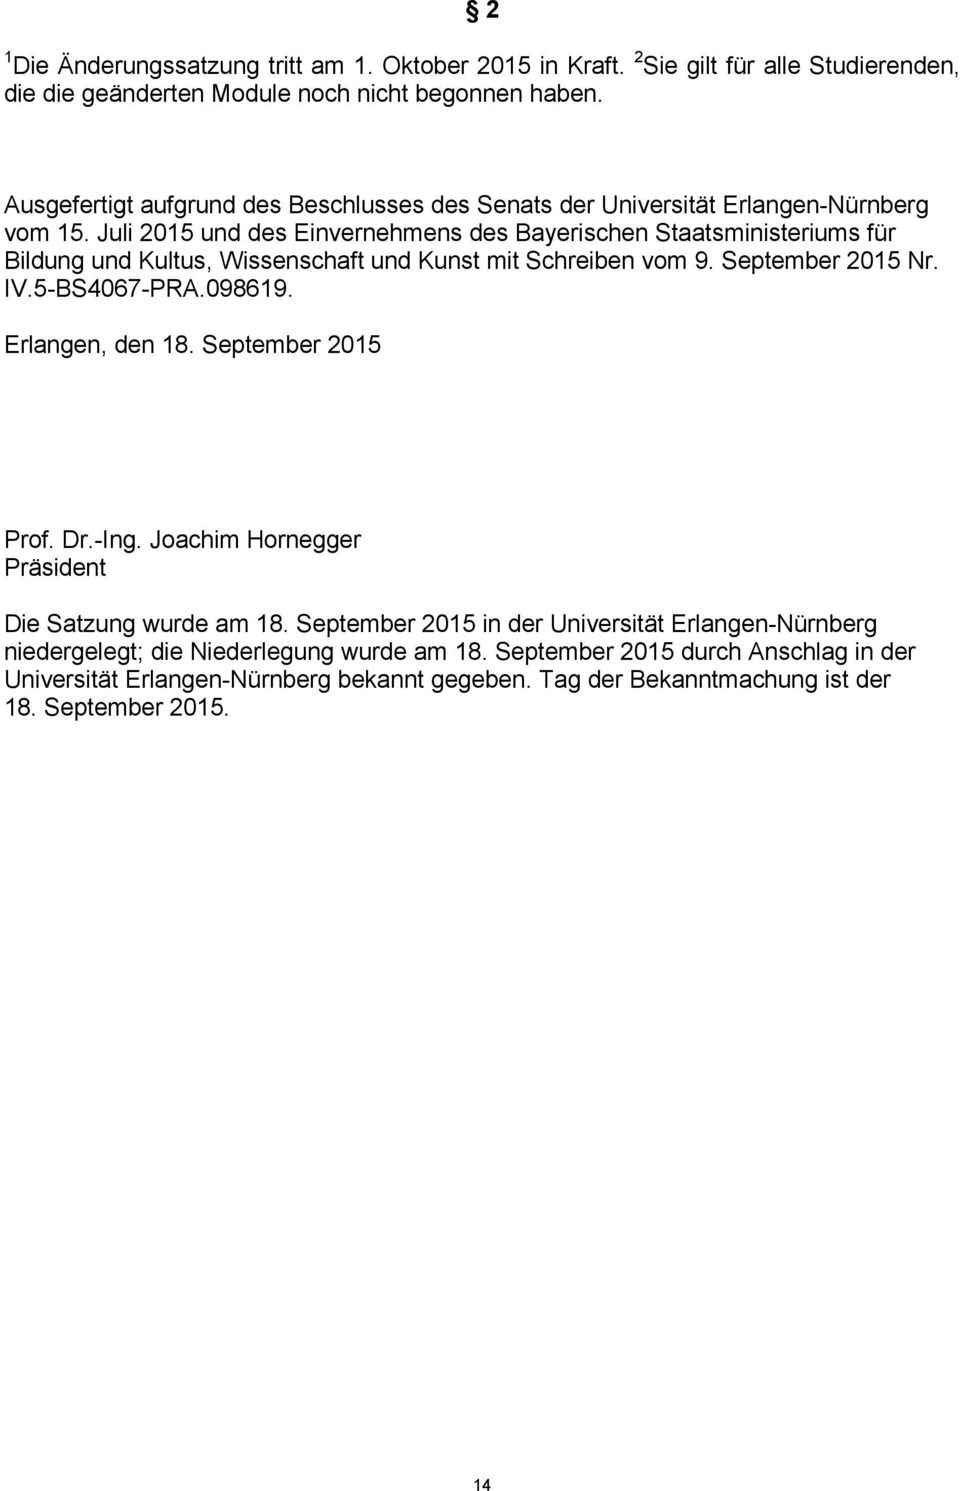 Juli 205 und des Einvernehmens des Bayerischen Staatsministeriums für Bildung und Kultus, Wissenschaft und Kunst mit Schreiben vom 9. September 205 Nr. IV.5-BS4067-PRA.09869.